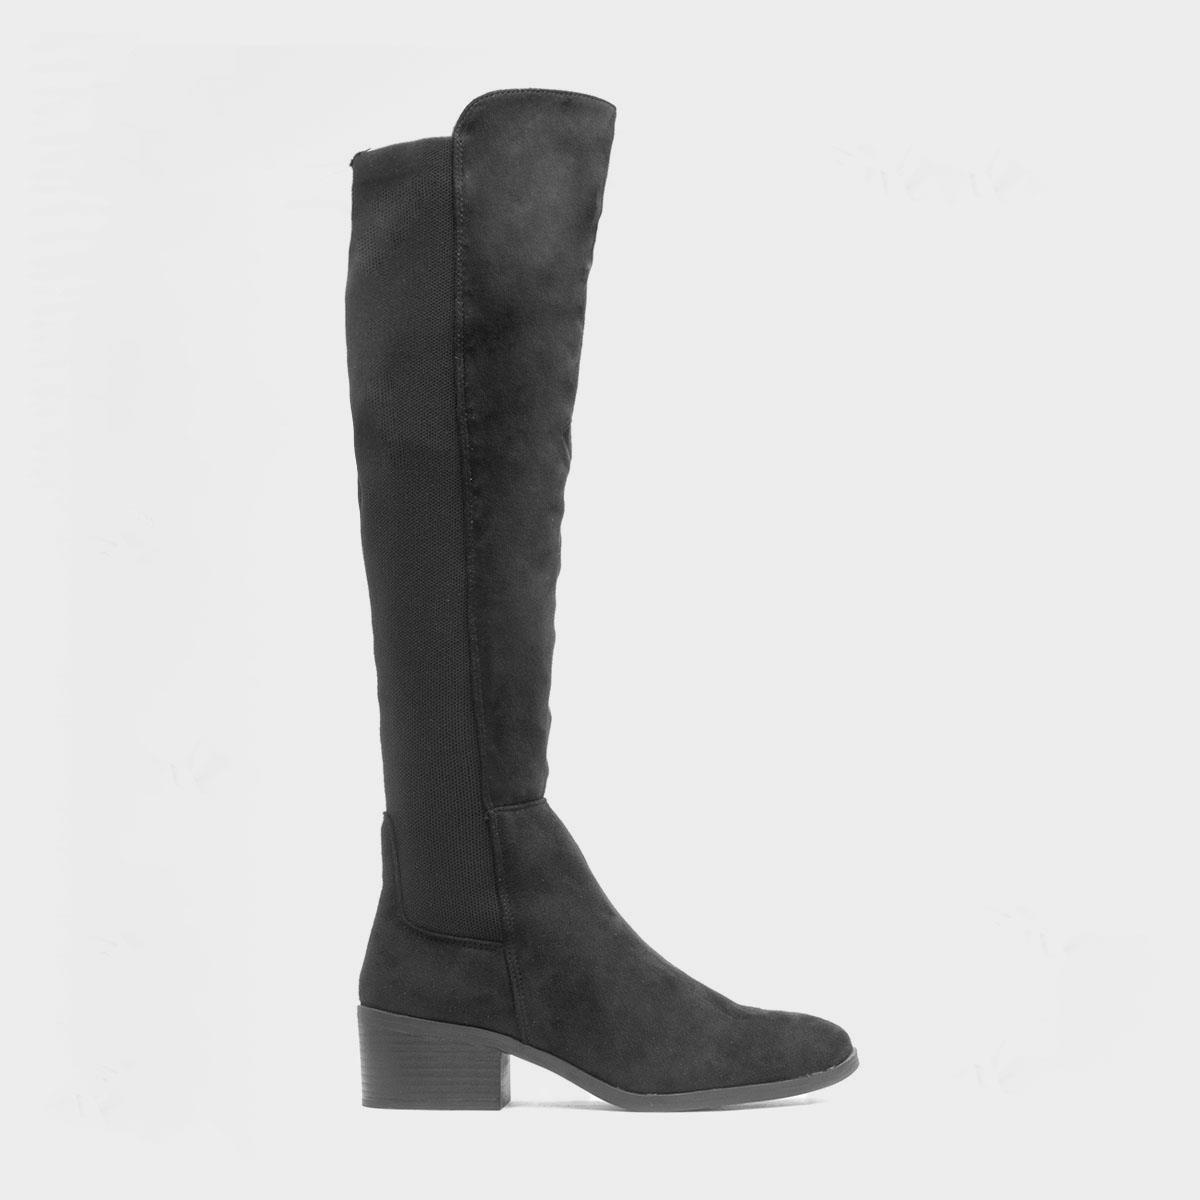 Truffle Jade Womens Black Knee High Boot-189799 | Shoe Zone